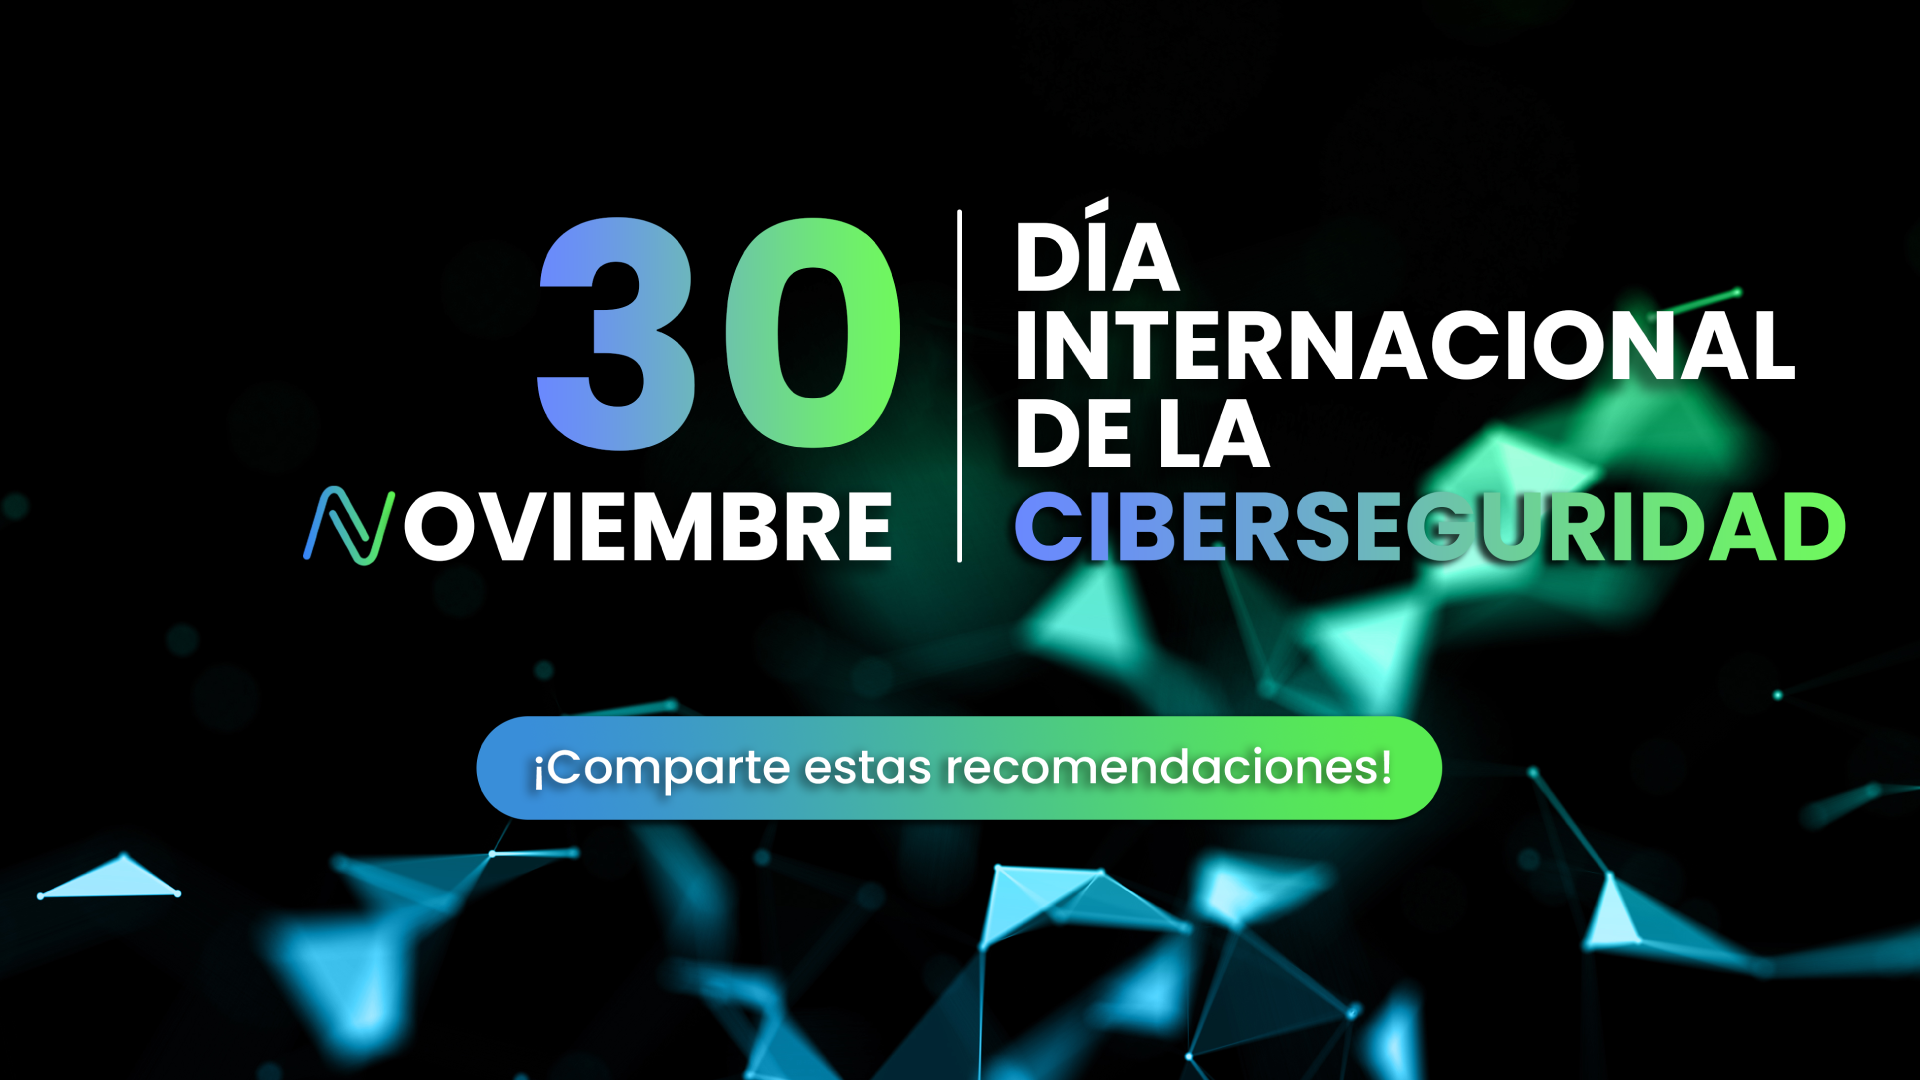 dia internacional de la ciberseguridad